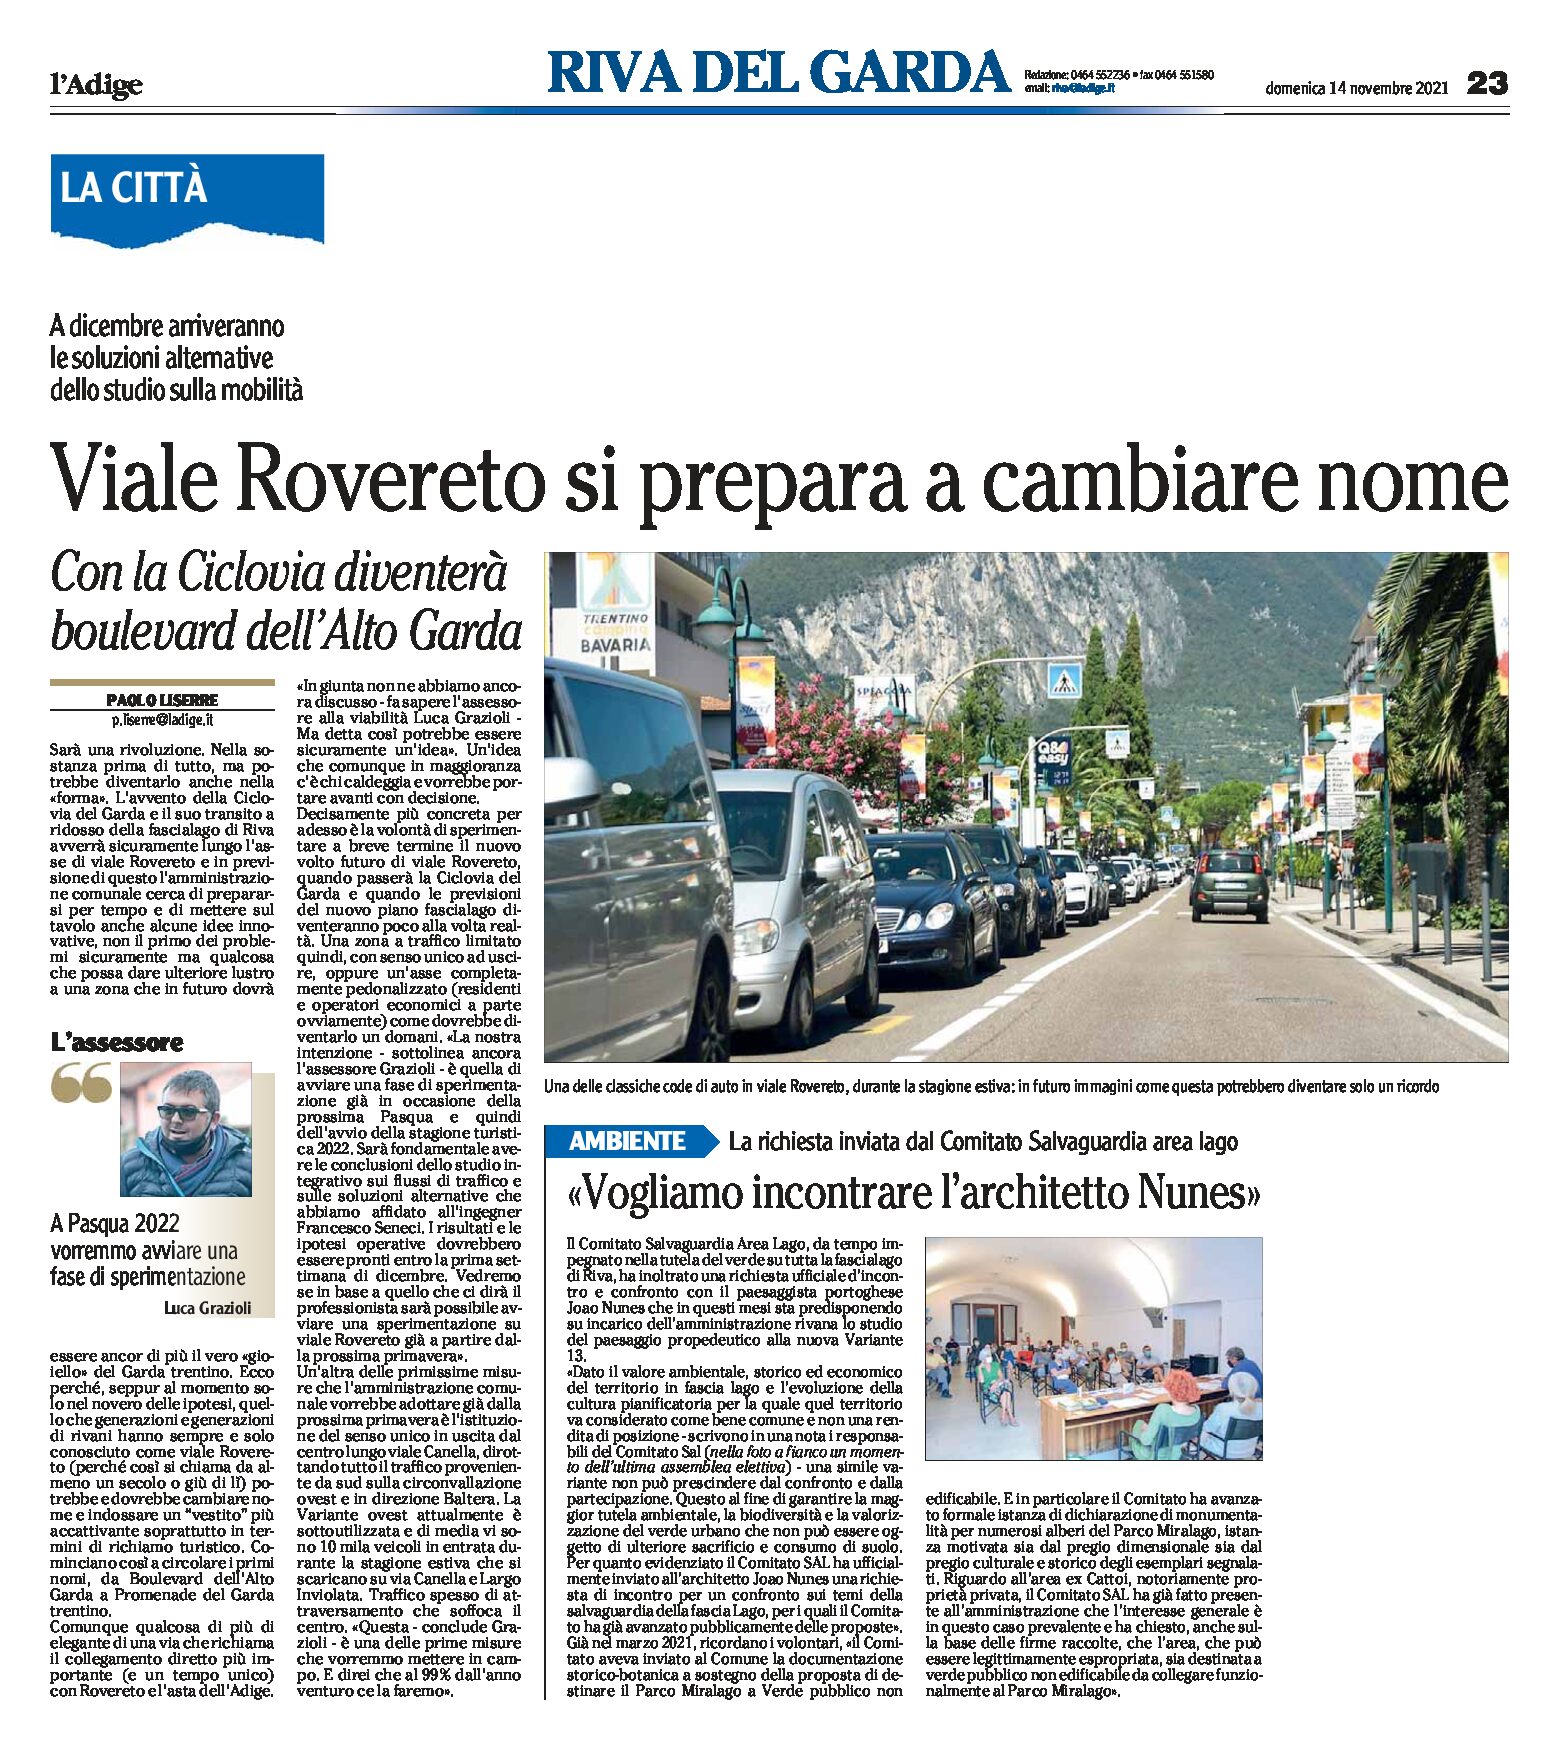 Riva: viale Rovereto si prepara a cambiare nome. Con la Ciclovia diventerà boulevard dell’Alto Garda